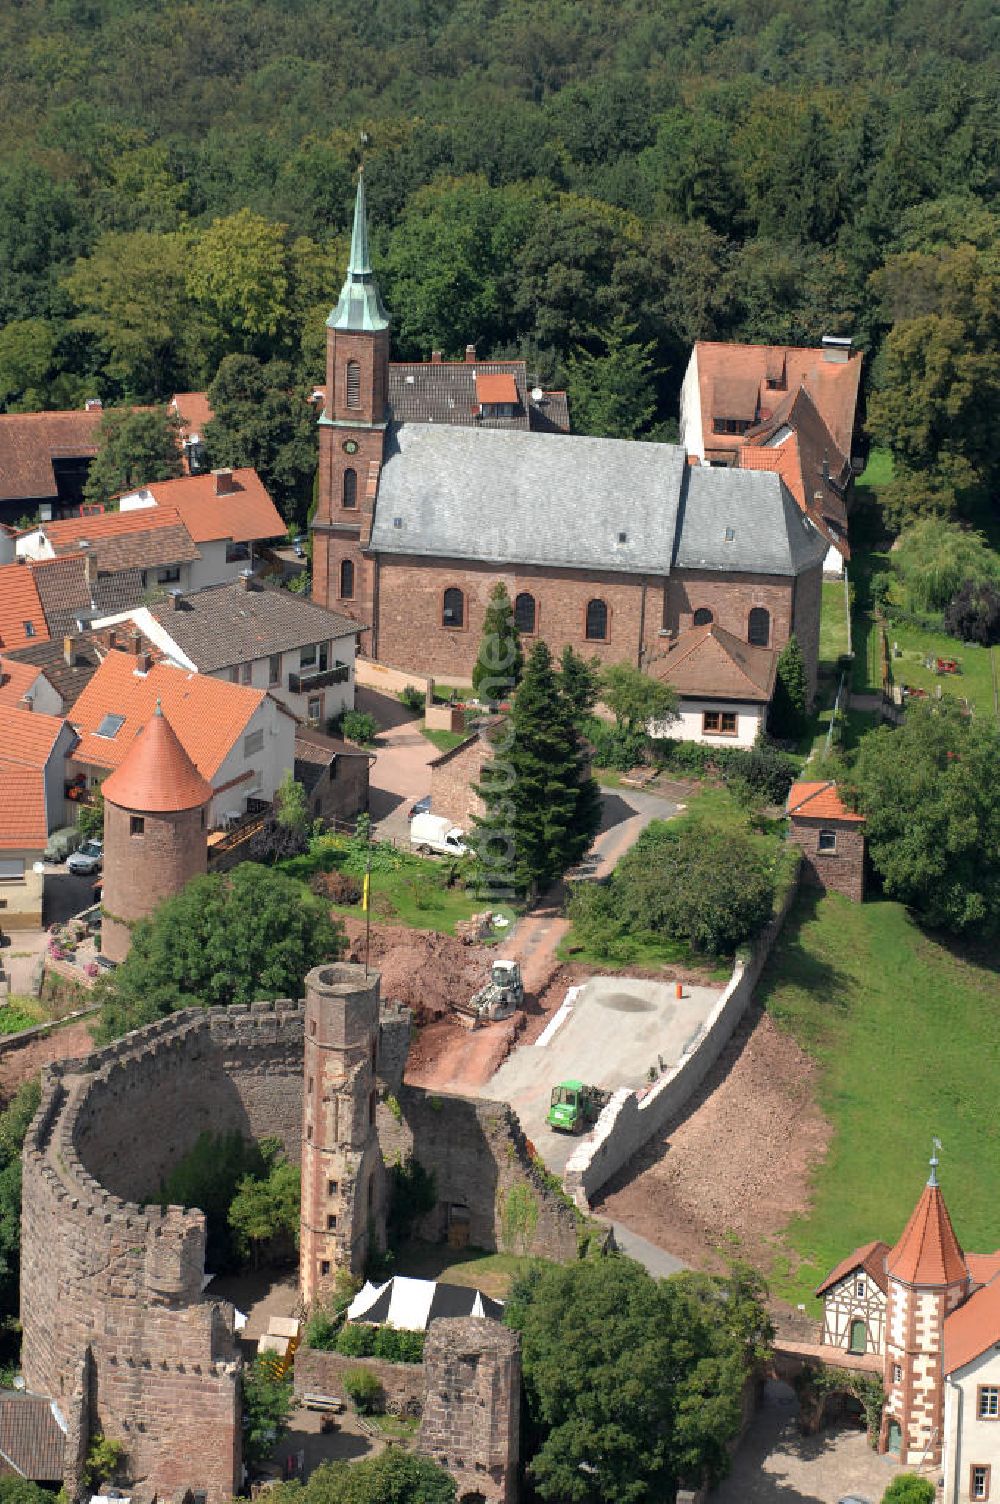 Luftbild Dilsberg - Dir Burgruine in der Gemeinde Dilsberg